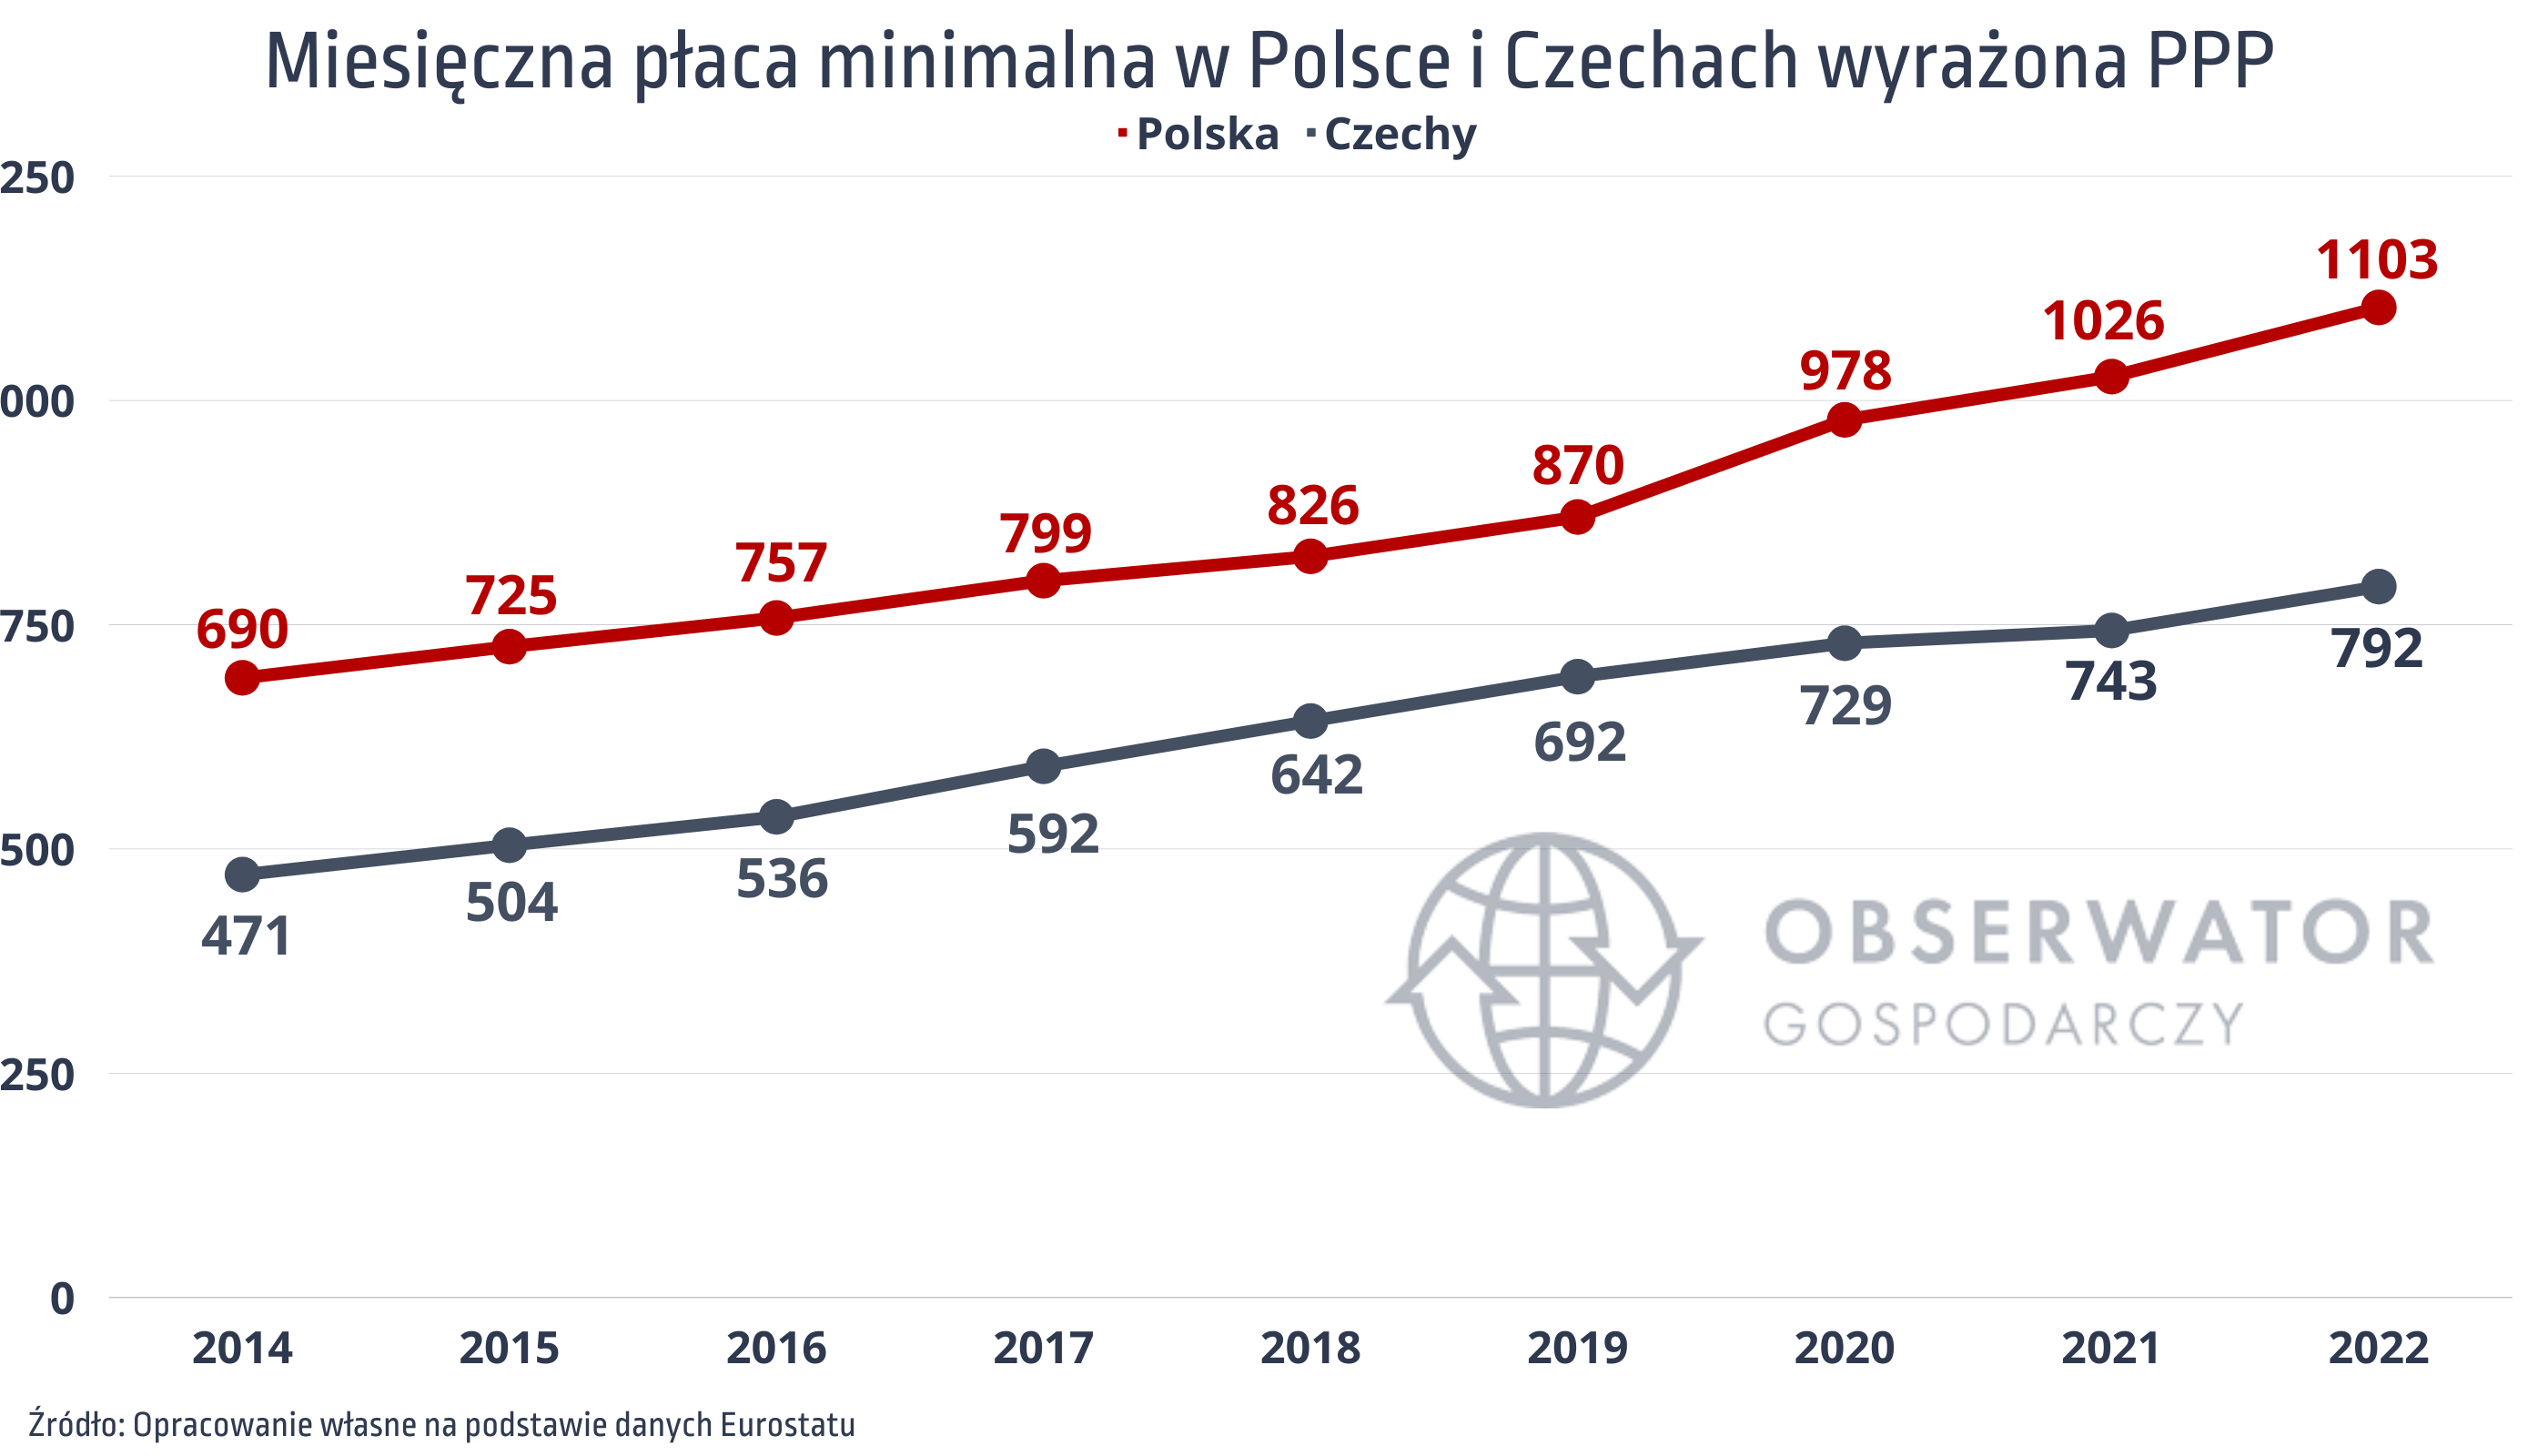 Miesięczna płaca minimalna w Polsce i Czechach PPP